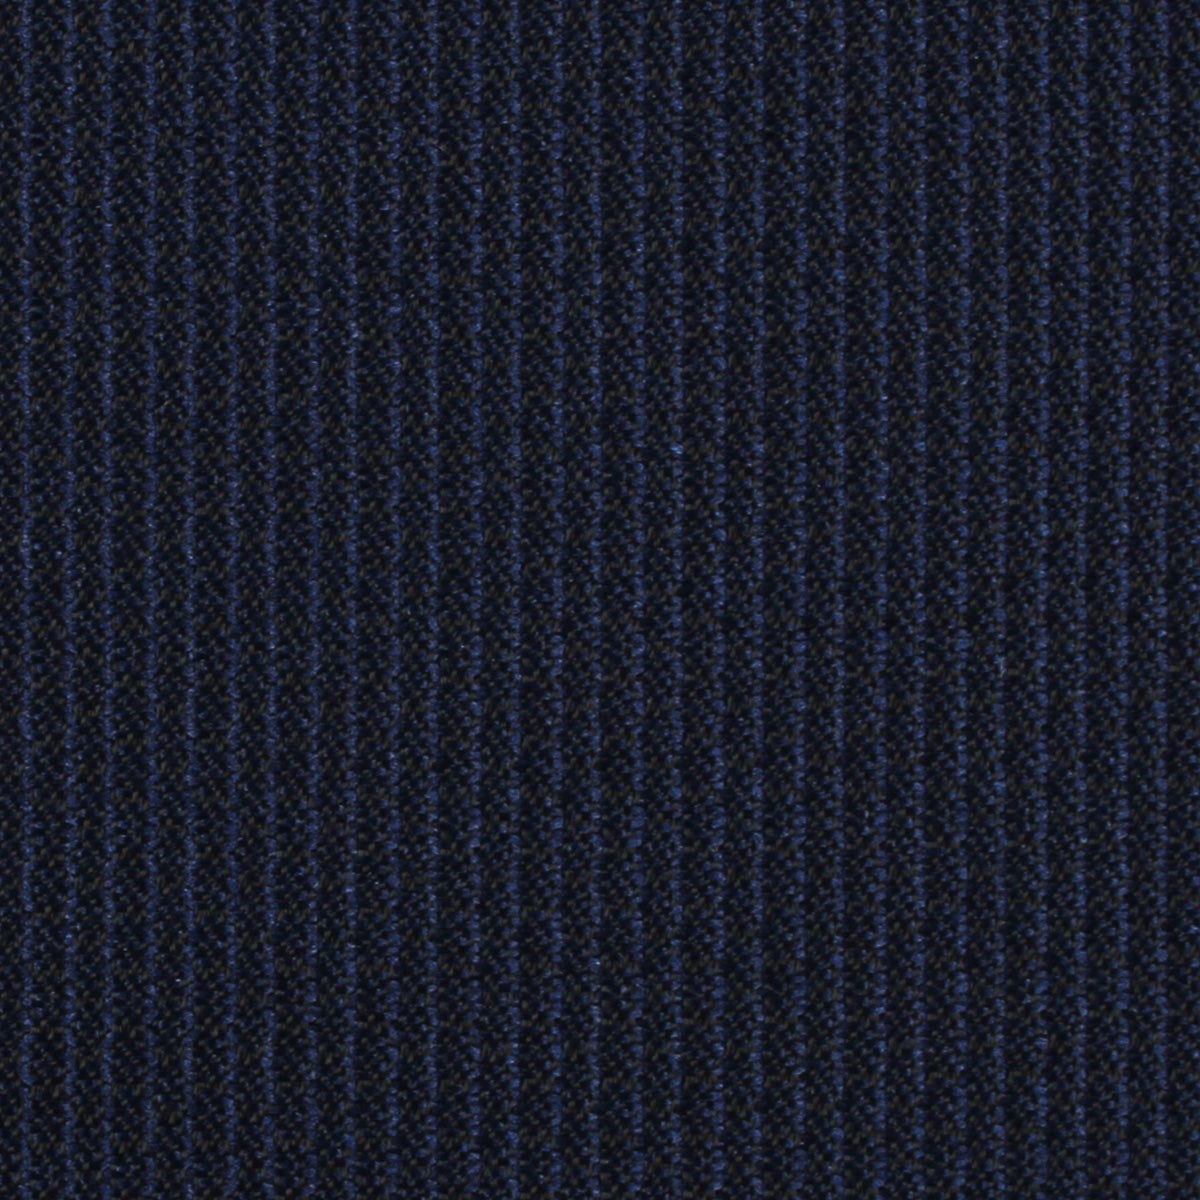 Navy Blue Weave Skinny Tie Fabric